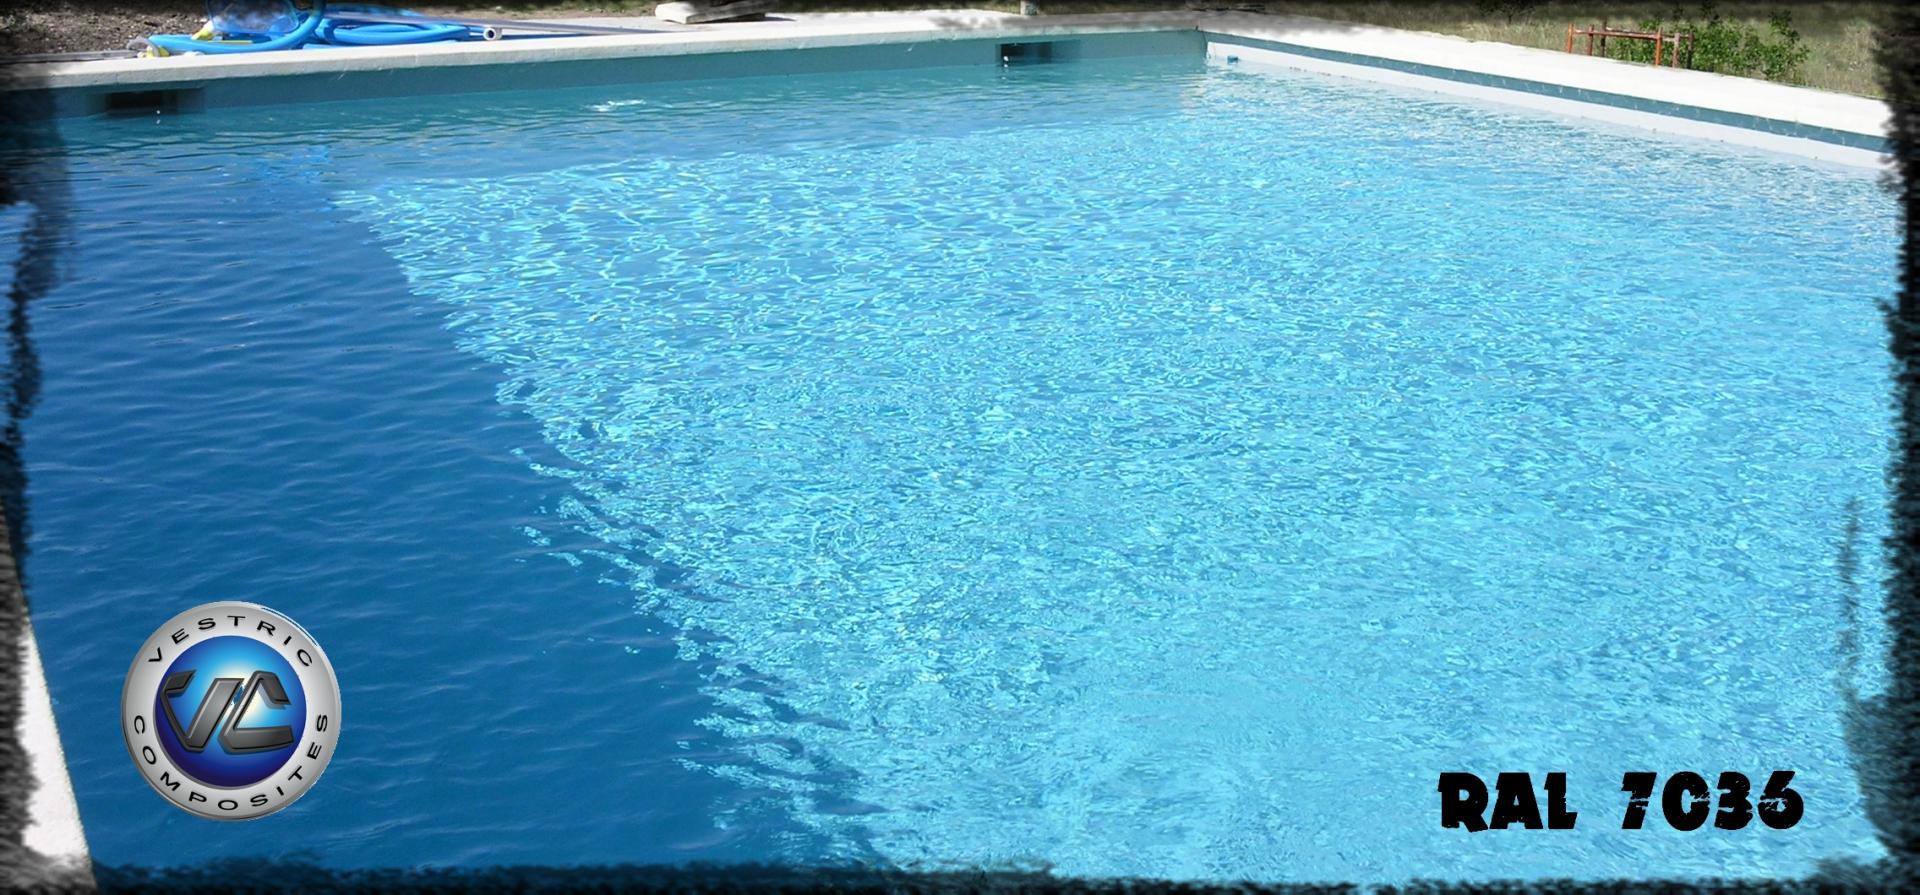 Ral 7036 gris platine piscine en eau couleur resine gel coat vestric composites 4